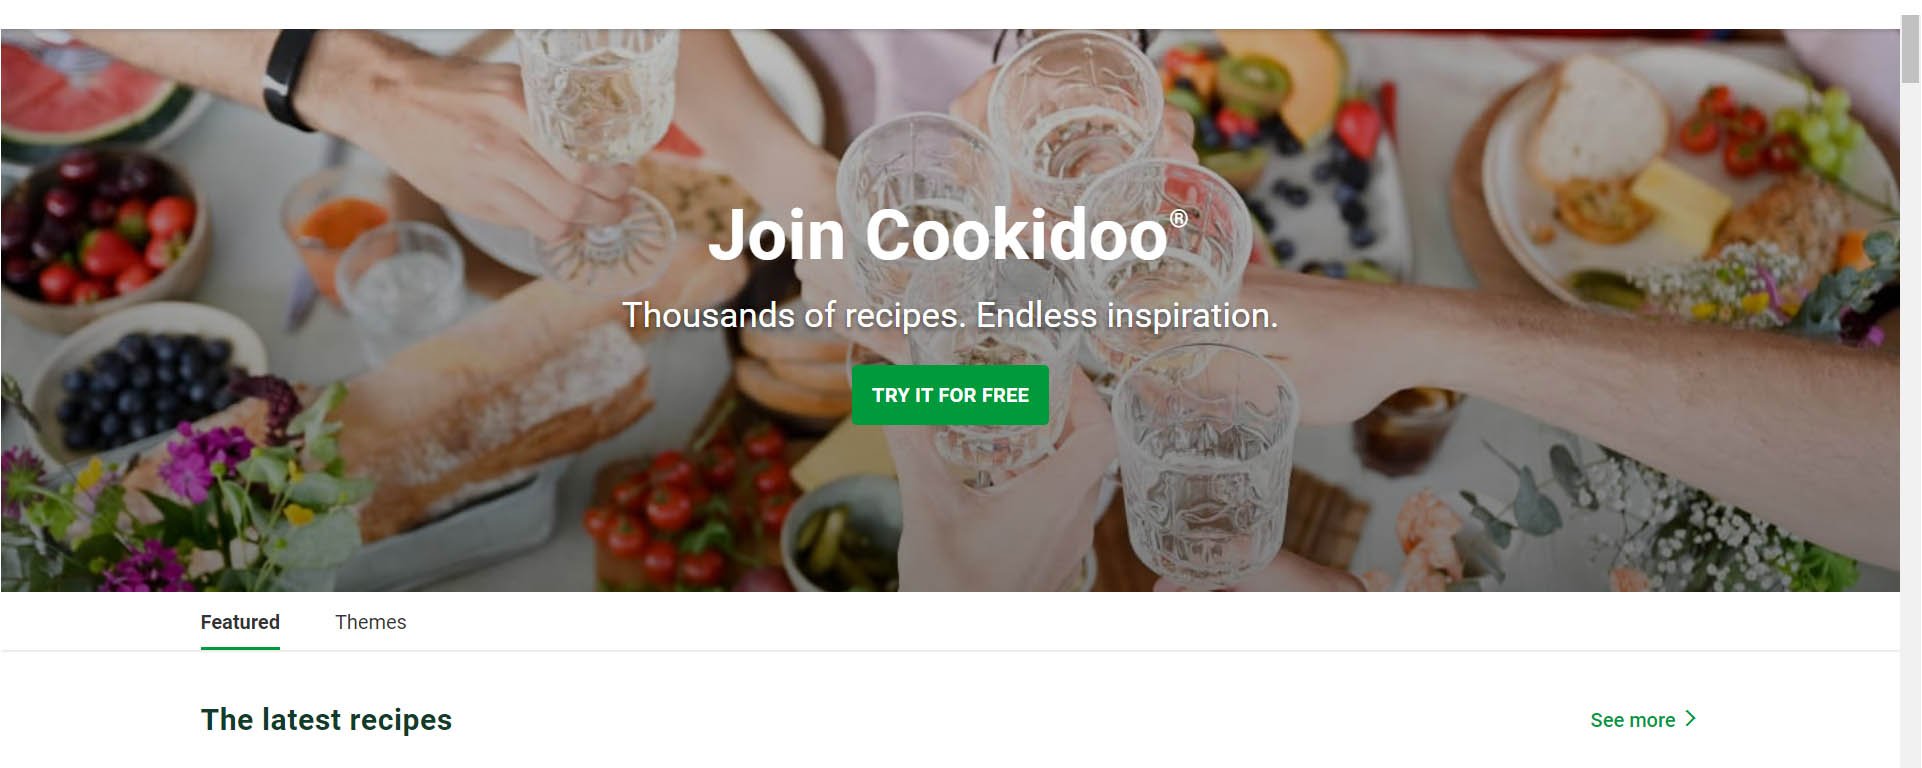 Registering for Cookidoo 3.0